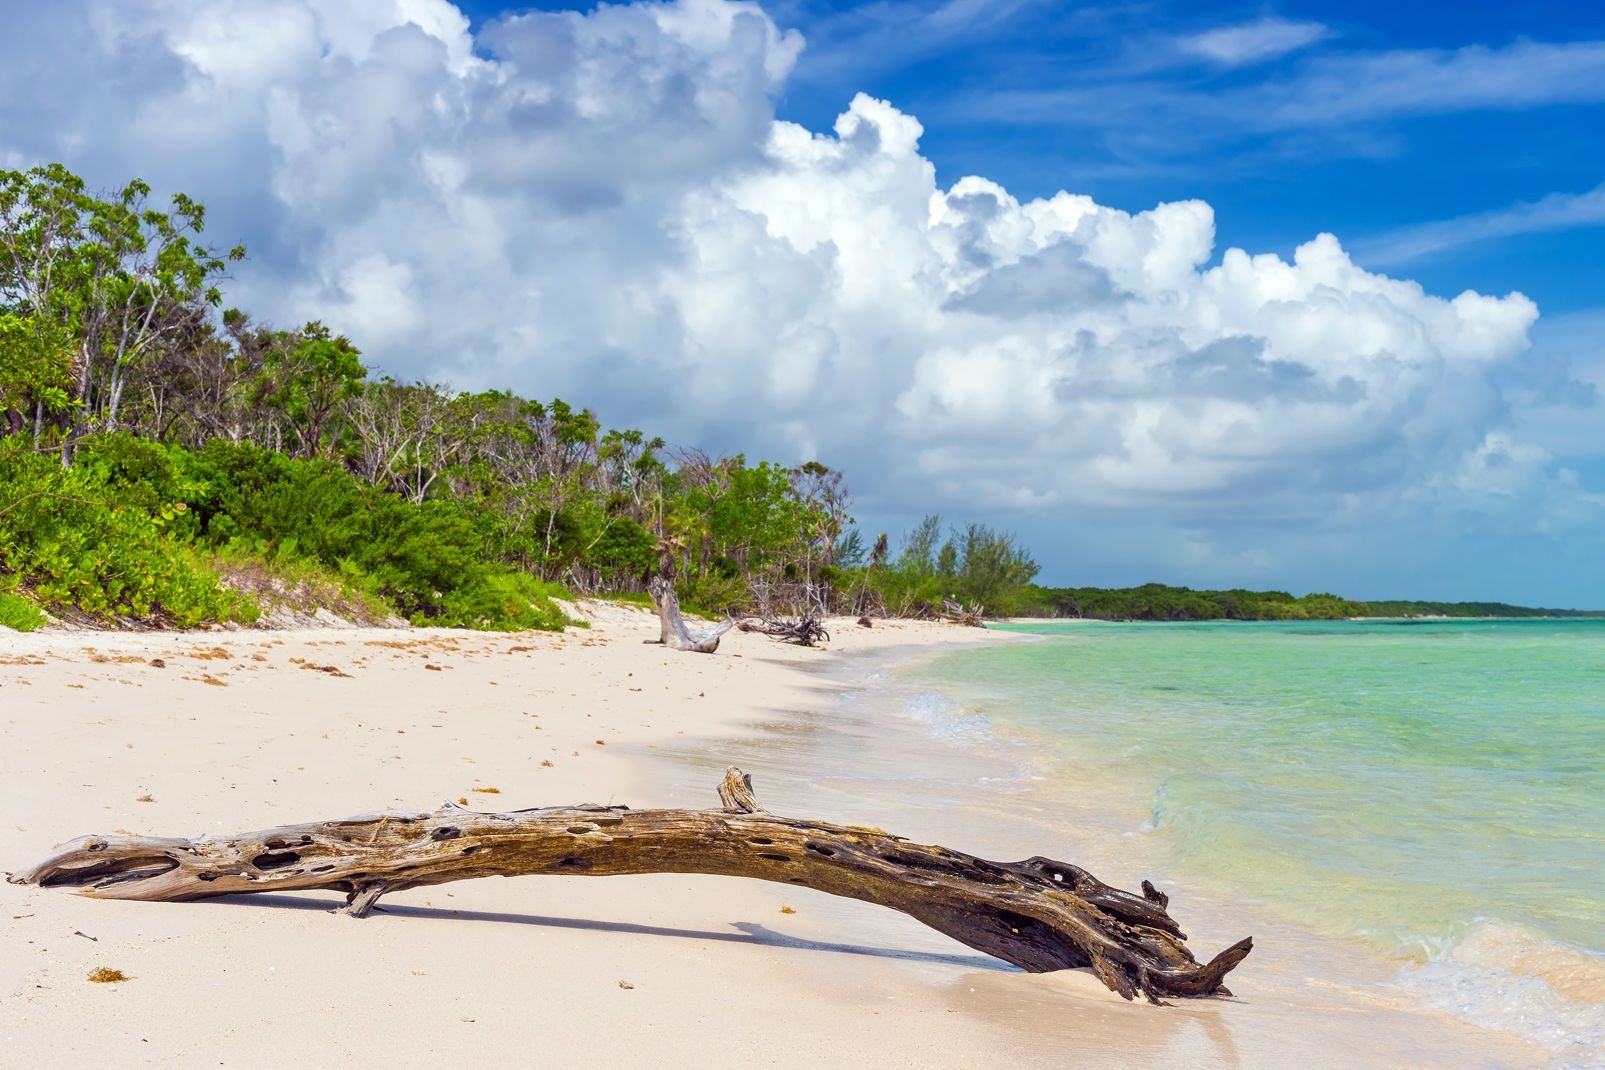 Au large de la côte nord de Cuba, c'est un bout du monde vert et blanc posé dans les eaux turquoise de l'Atlantique. Des kilomètres de sable, une forêt dense, de la mangrove et pour seuls habitants des flamants roses à la pelle, l'archipel de Camaguey est un Varadero sauvage, un repaire de Robinson Crusoé. Les hôtels sont situés principalement sur l'île principale de Cayo Coco, reliée au continent ...